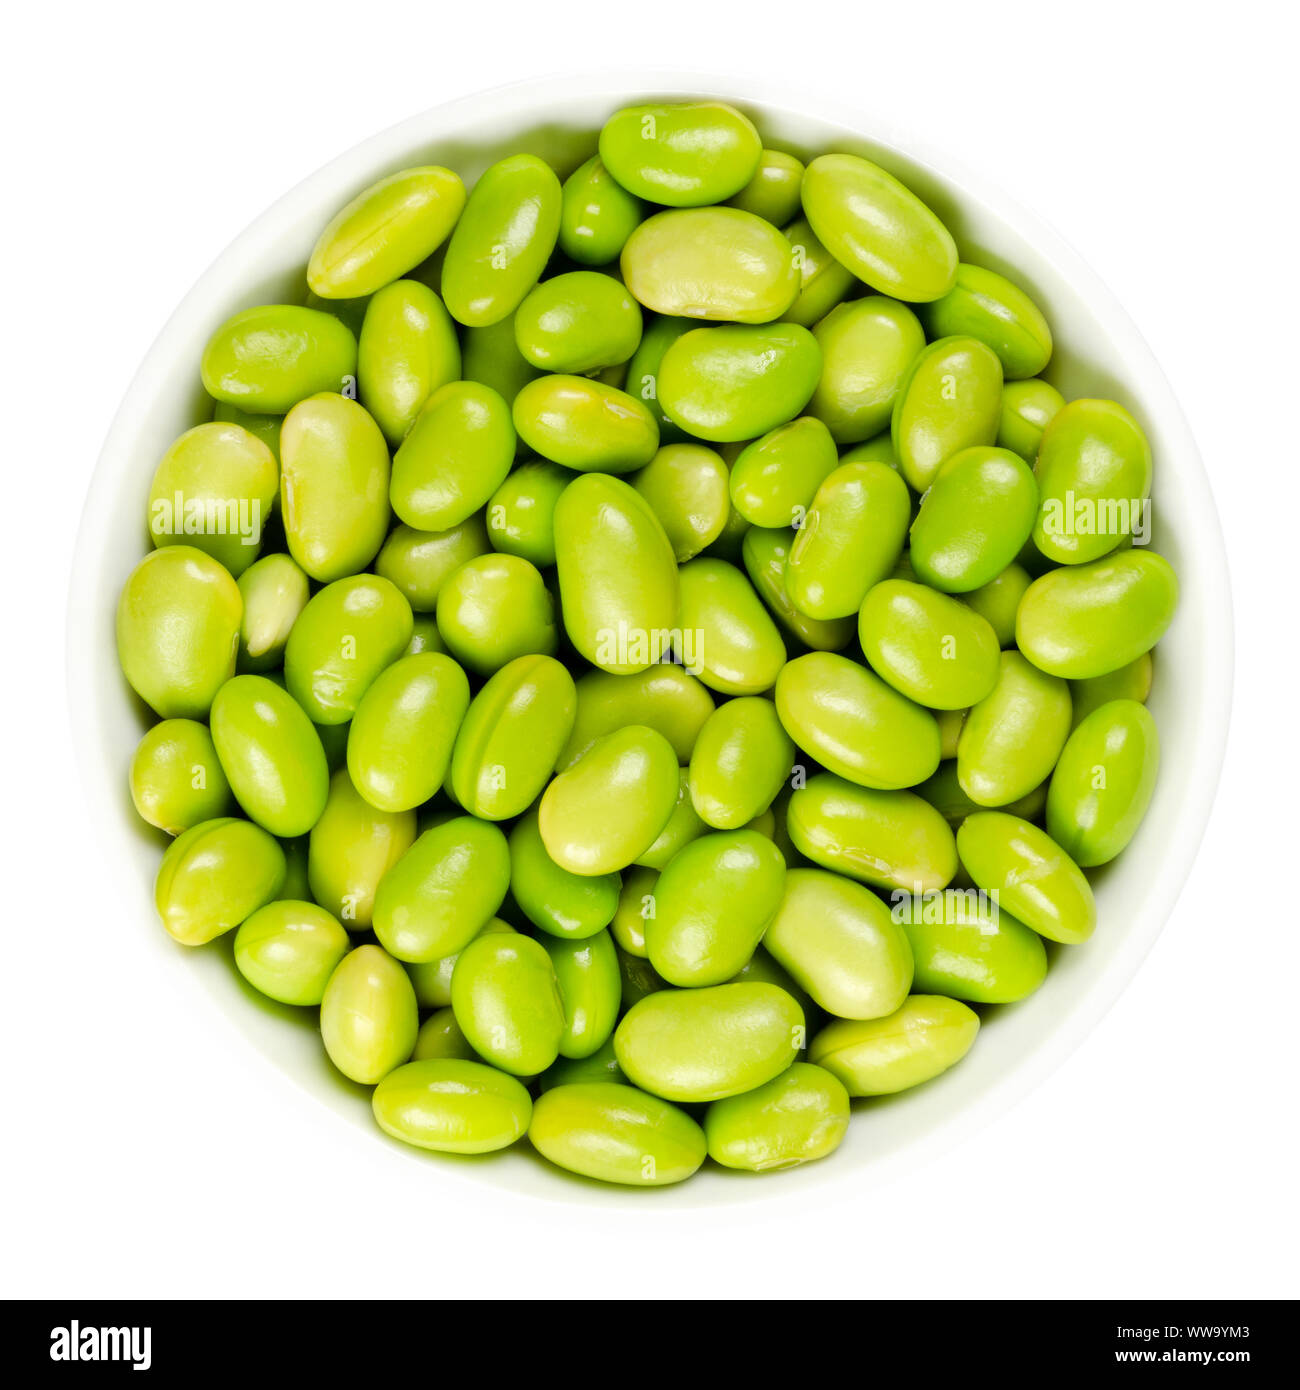 Edamame. Le soja vert blanc dans un bol. Mukimame non mûres, les graines de soja à l'extérieur de la gousse. Glycine max, une légumineuse, comestibles après cuisson et une source de protéines. Banque D'Images